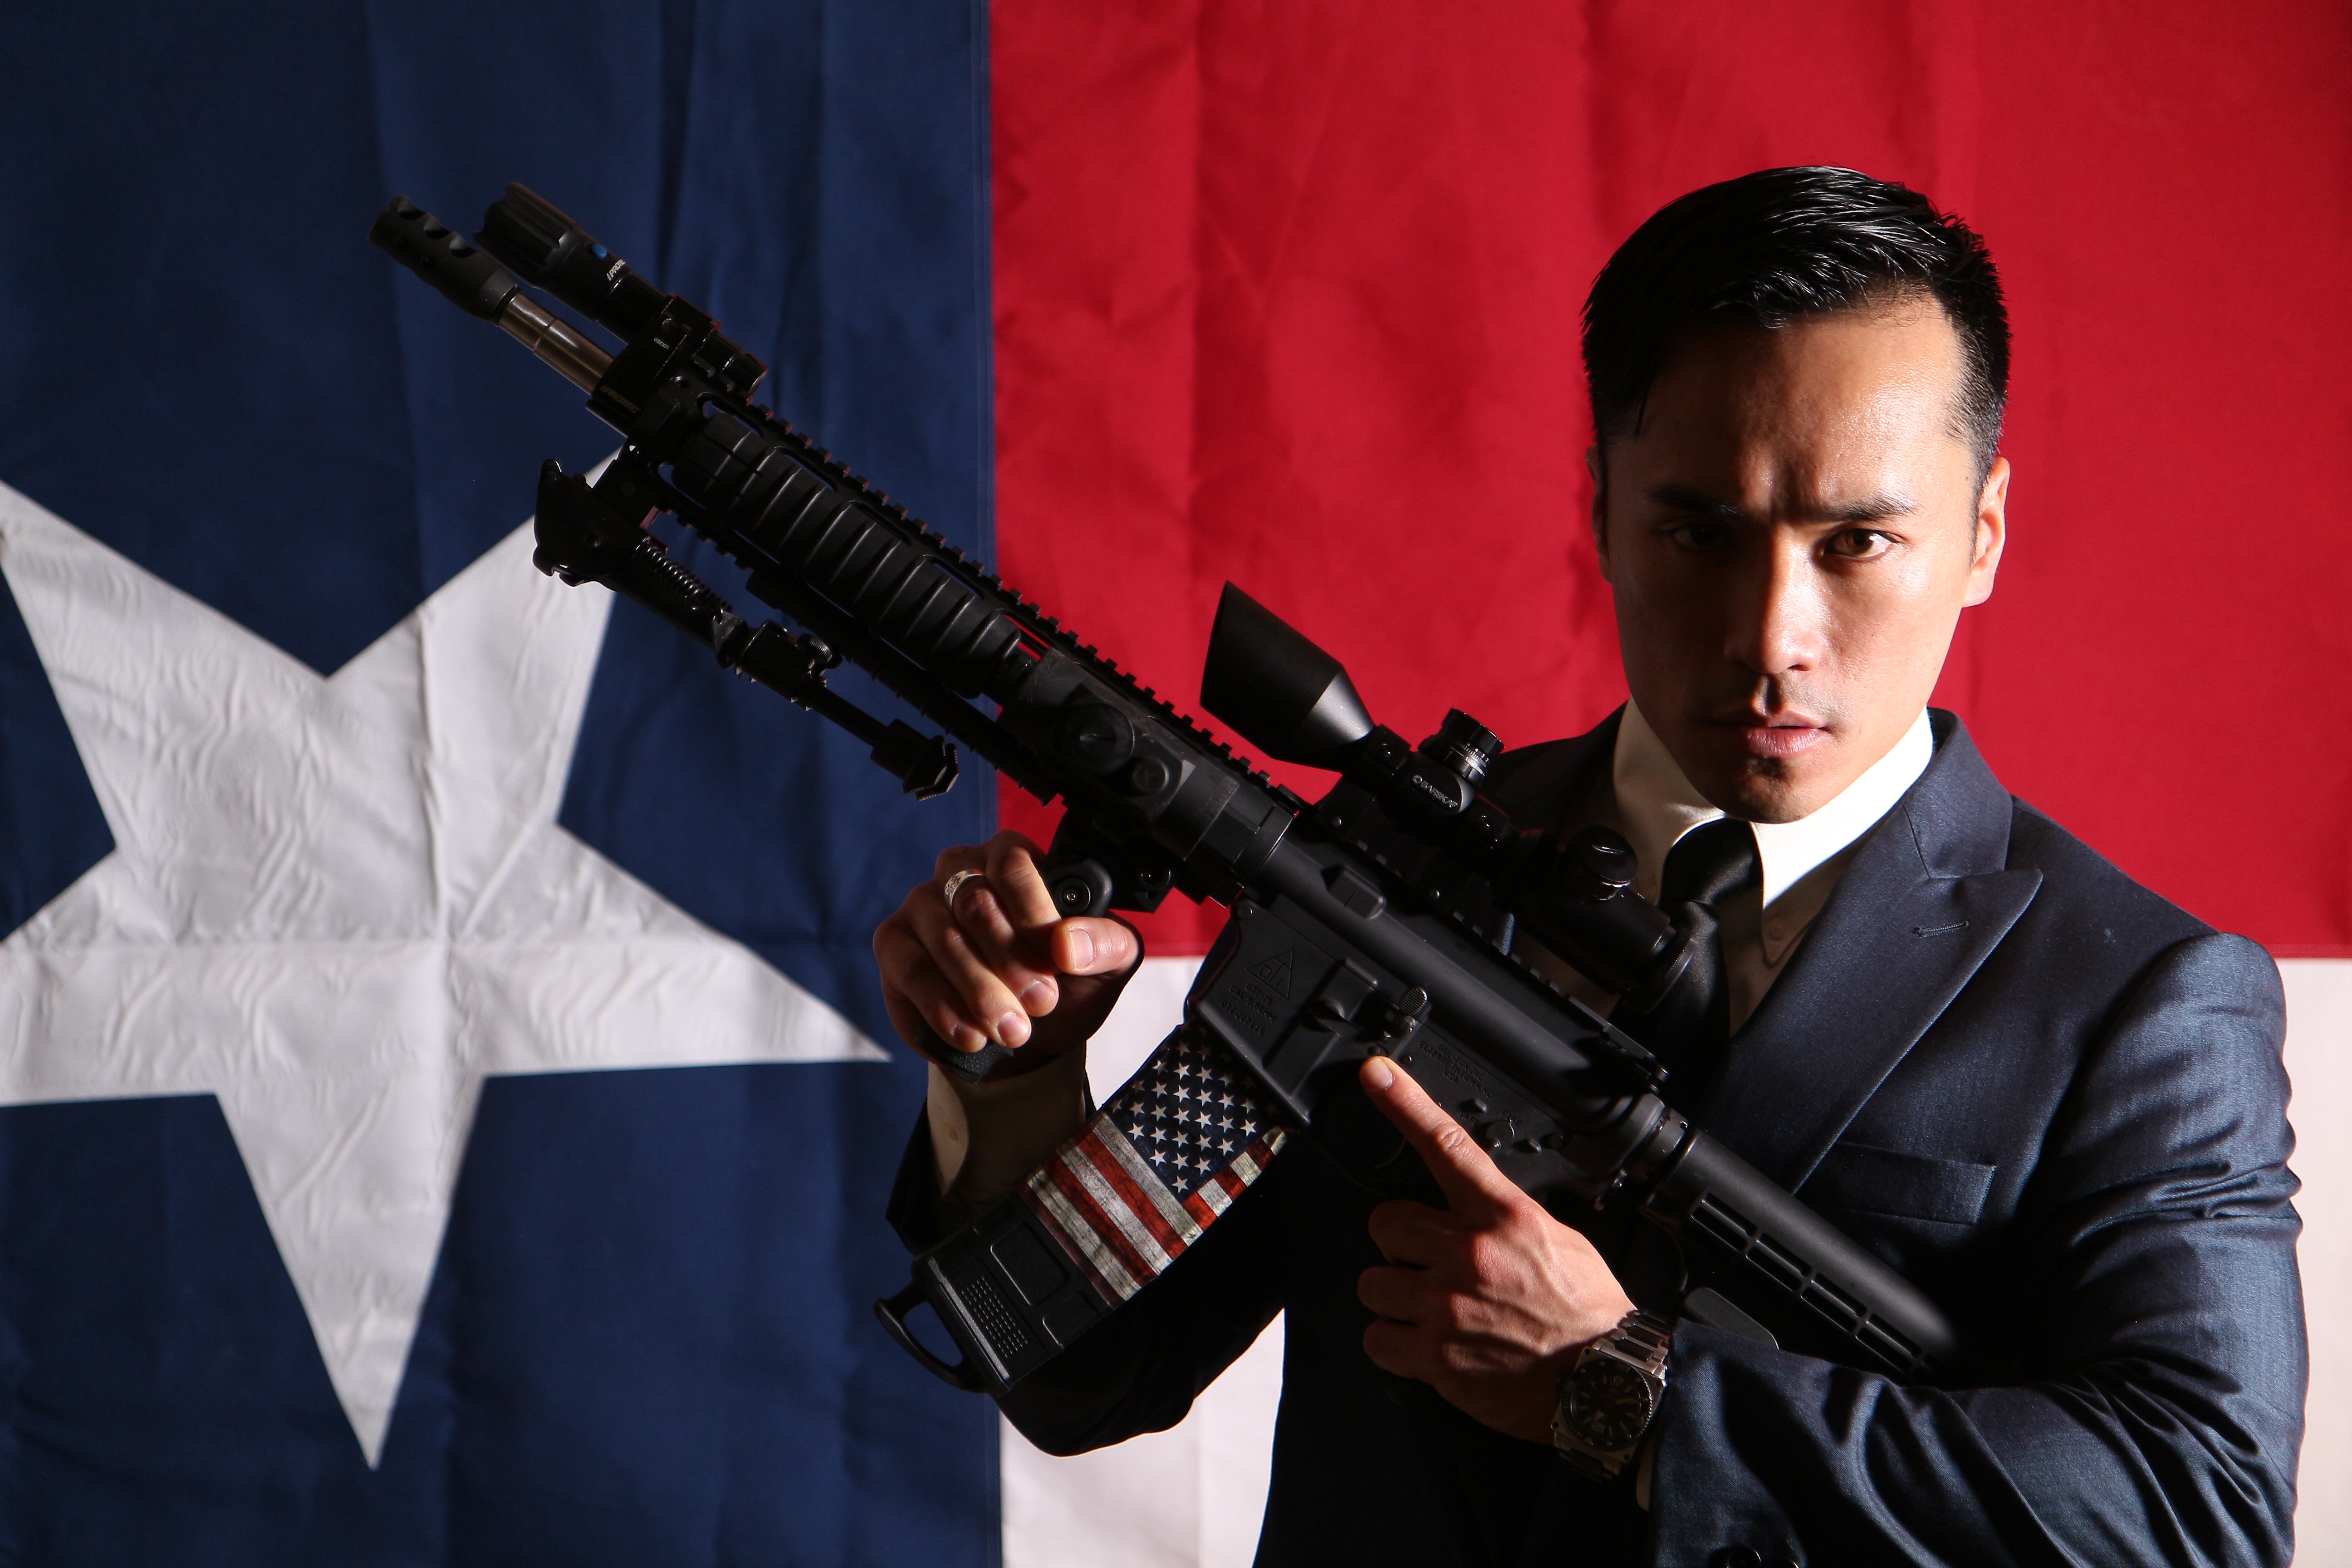 Texas Action film. AR-15